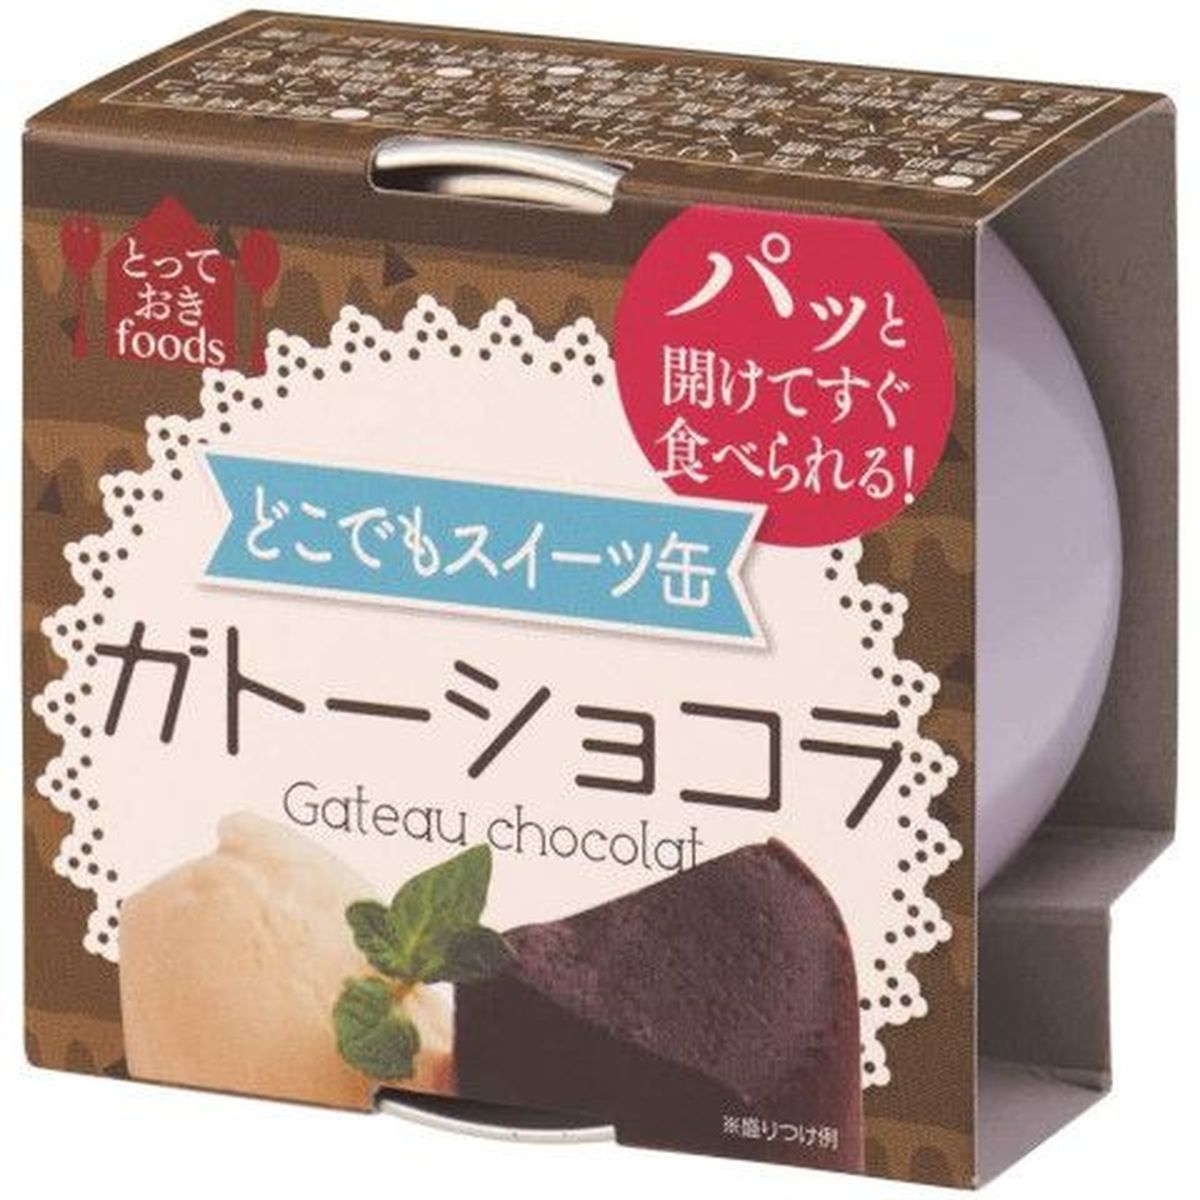 【24個入リ】トーヨーフーズ ドコデモスイーツ缶ミニ ガトーショコラ 65g